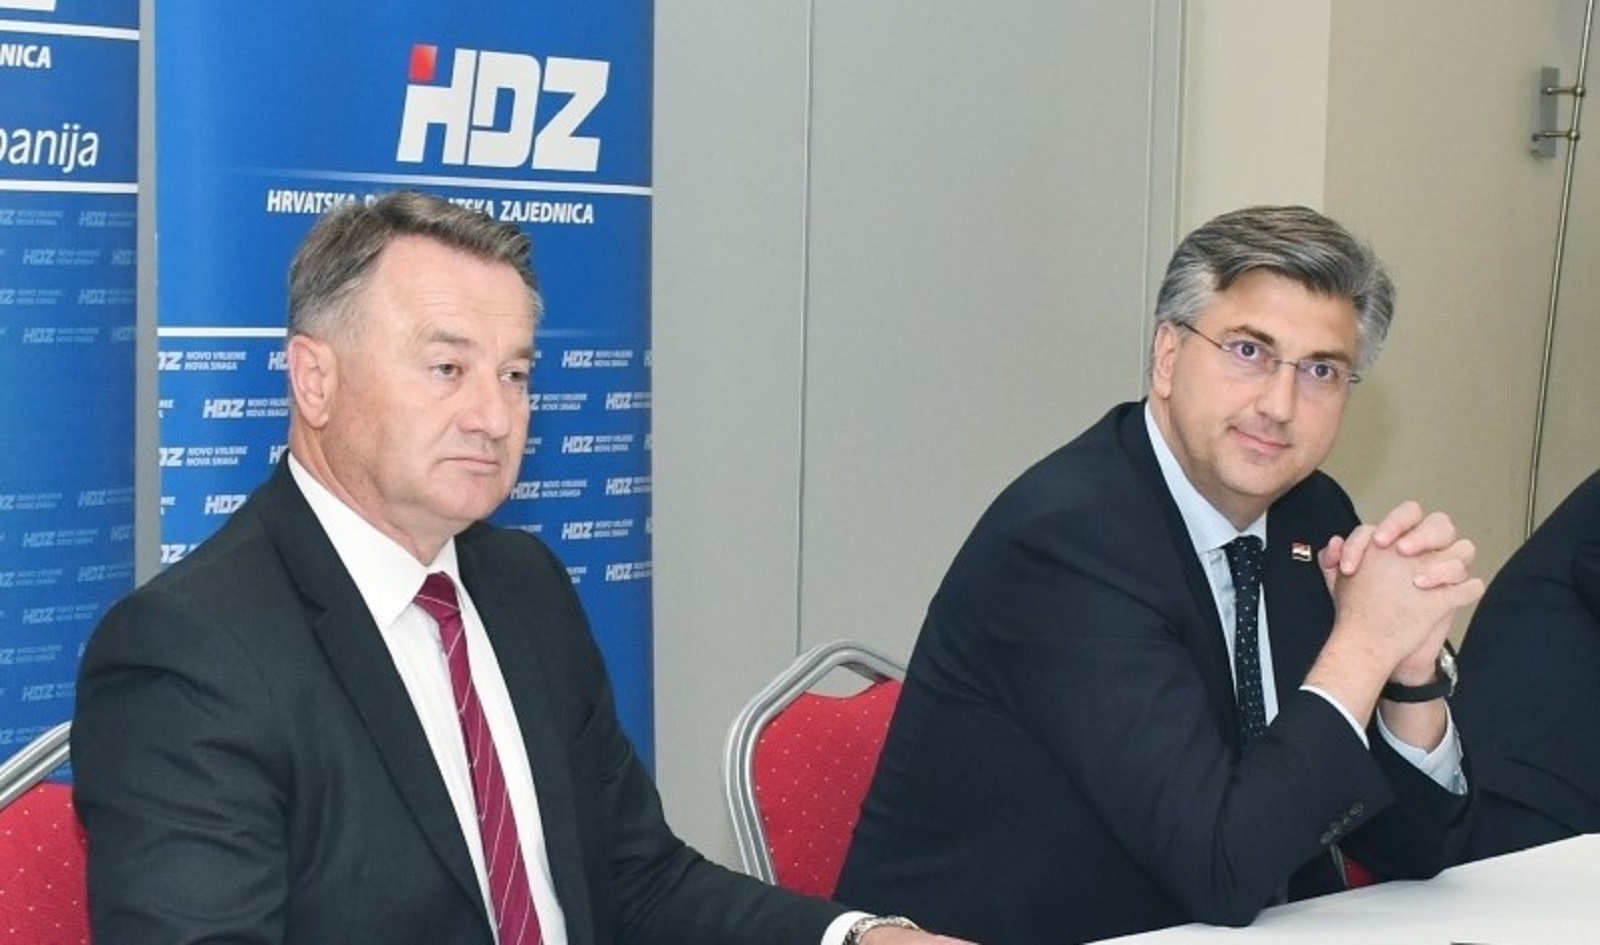 03.06.2020., Sisak - Predsjednik Vlade i HDZ-a Andrej Plenkovic sudjelovao je na sjednici Zupanijskog odbora HDZ-a Sisacko-moslavacke zupanije.
Photo: Nikola Cutuk/PIXSELL